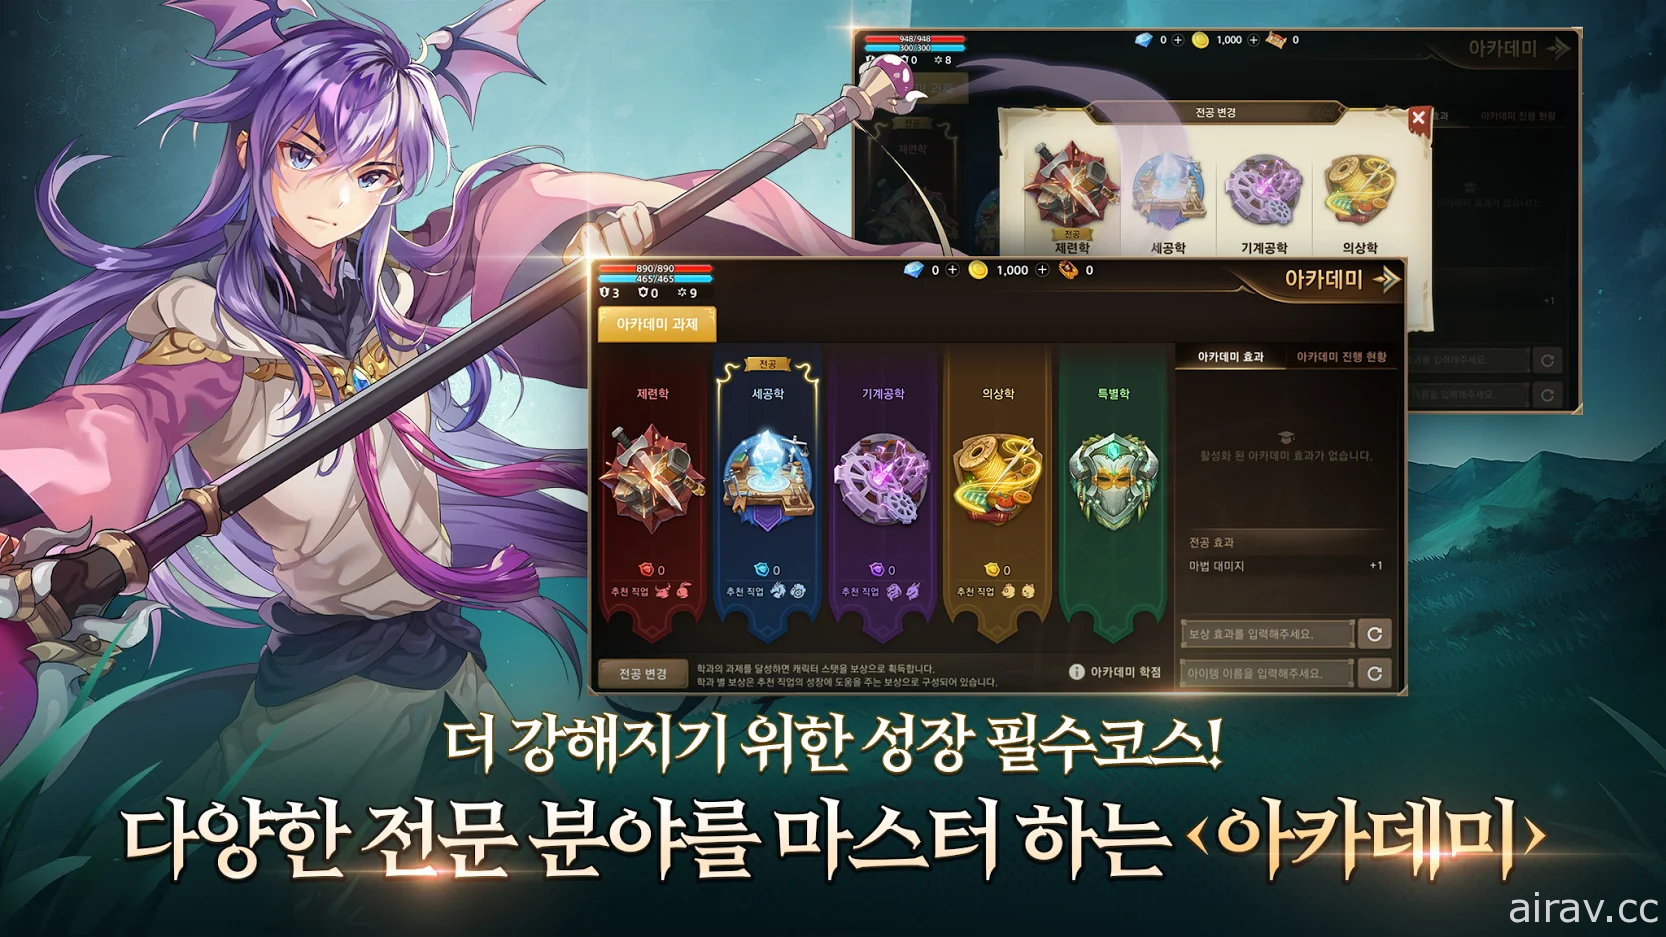 同名線上遊戲改編《卡巴拉島 M》今於韓國推出 於手機上再次體驗經典鑽地樂趣